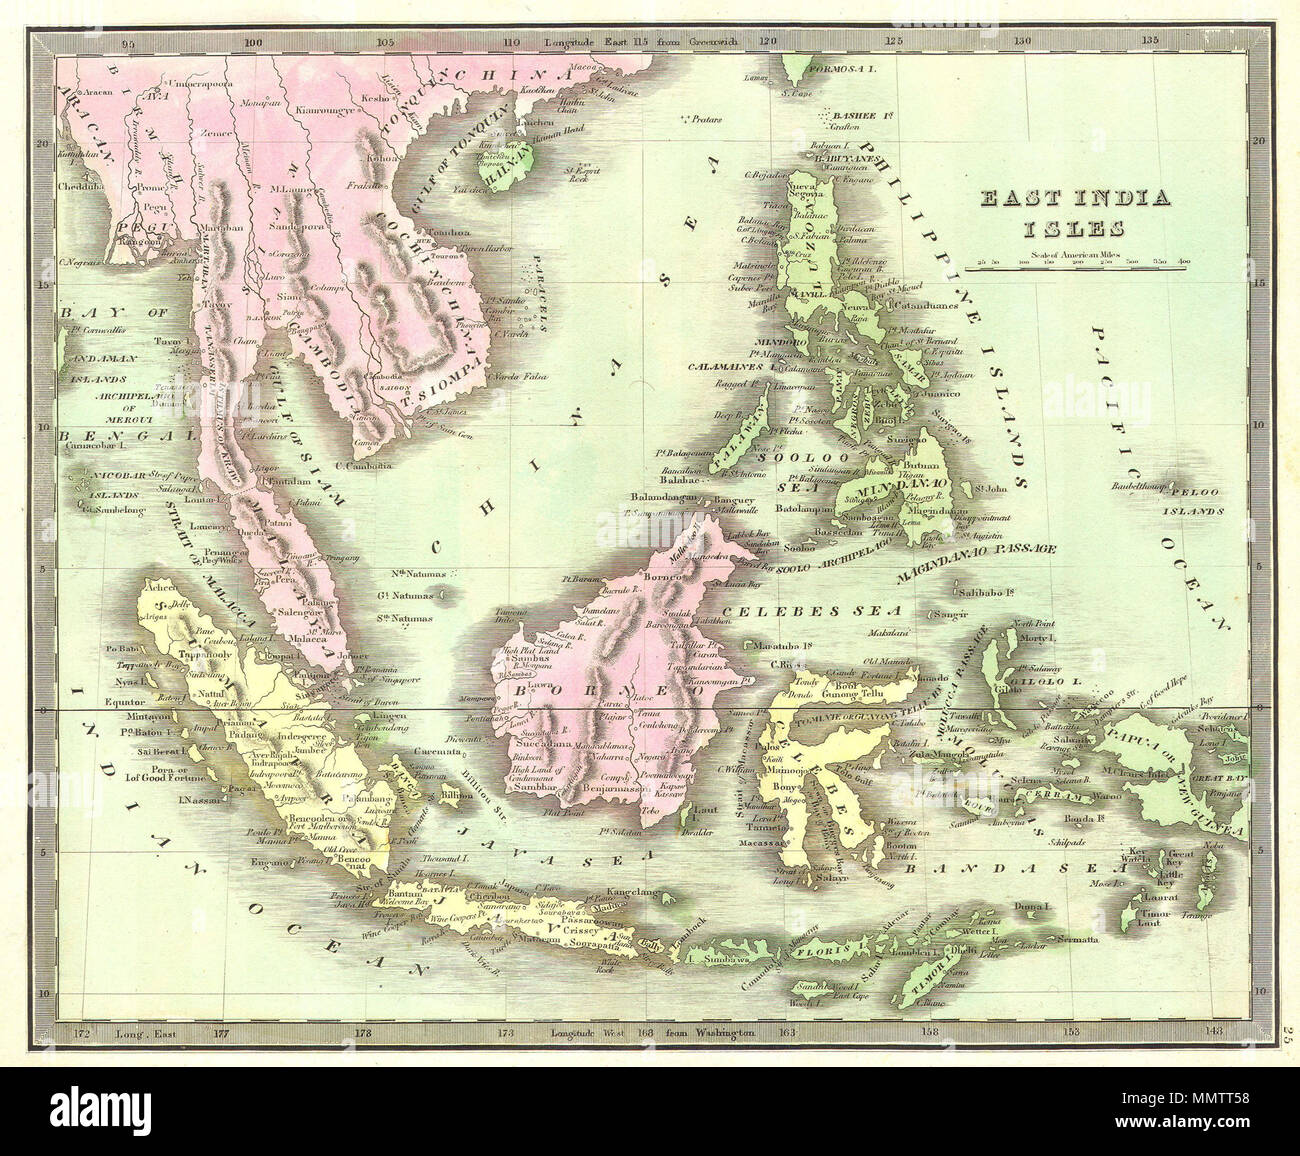 . Inglese: questa colorata a mano mappa è una incisione litografica delle Indie Orientali, risalente al 1842. Mostra tutti del sud-est asiatico e le Indie orientali comprese Sumatra, Java, Borneo e le Filippine. Sulla terraferma si mostra i regni del Siam (Thailandia), Tonquin (Vietnam), Malaya e Cambogia. Illustra inoltre la città isola di Singapore. Come la maggior parte delle mappe Greenleaf, questo è datata. East India Isole. 1842. 1842 Greenleaf mappa delle Indie Orientali, Borneo, Giava e Sumatra, Thailandia, Vietnam - Geographicus - EastIndies-greenleaf-1842 Foto Stock